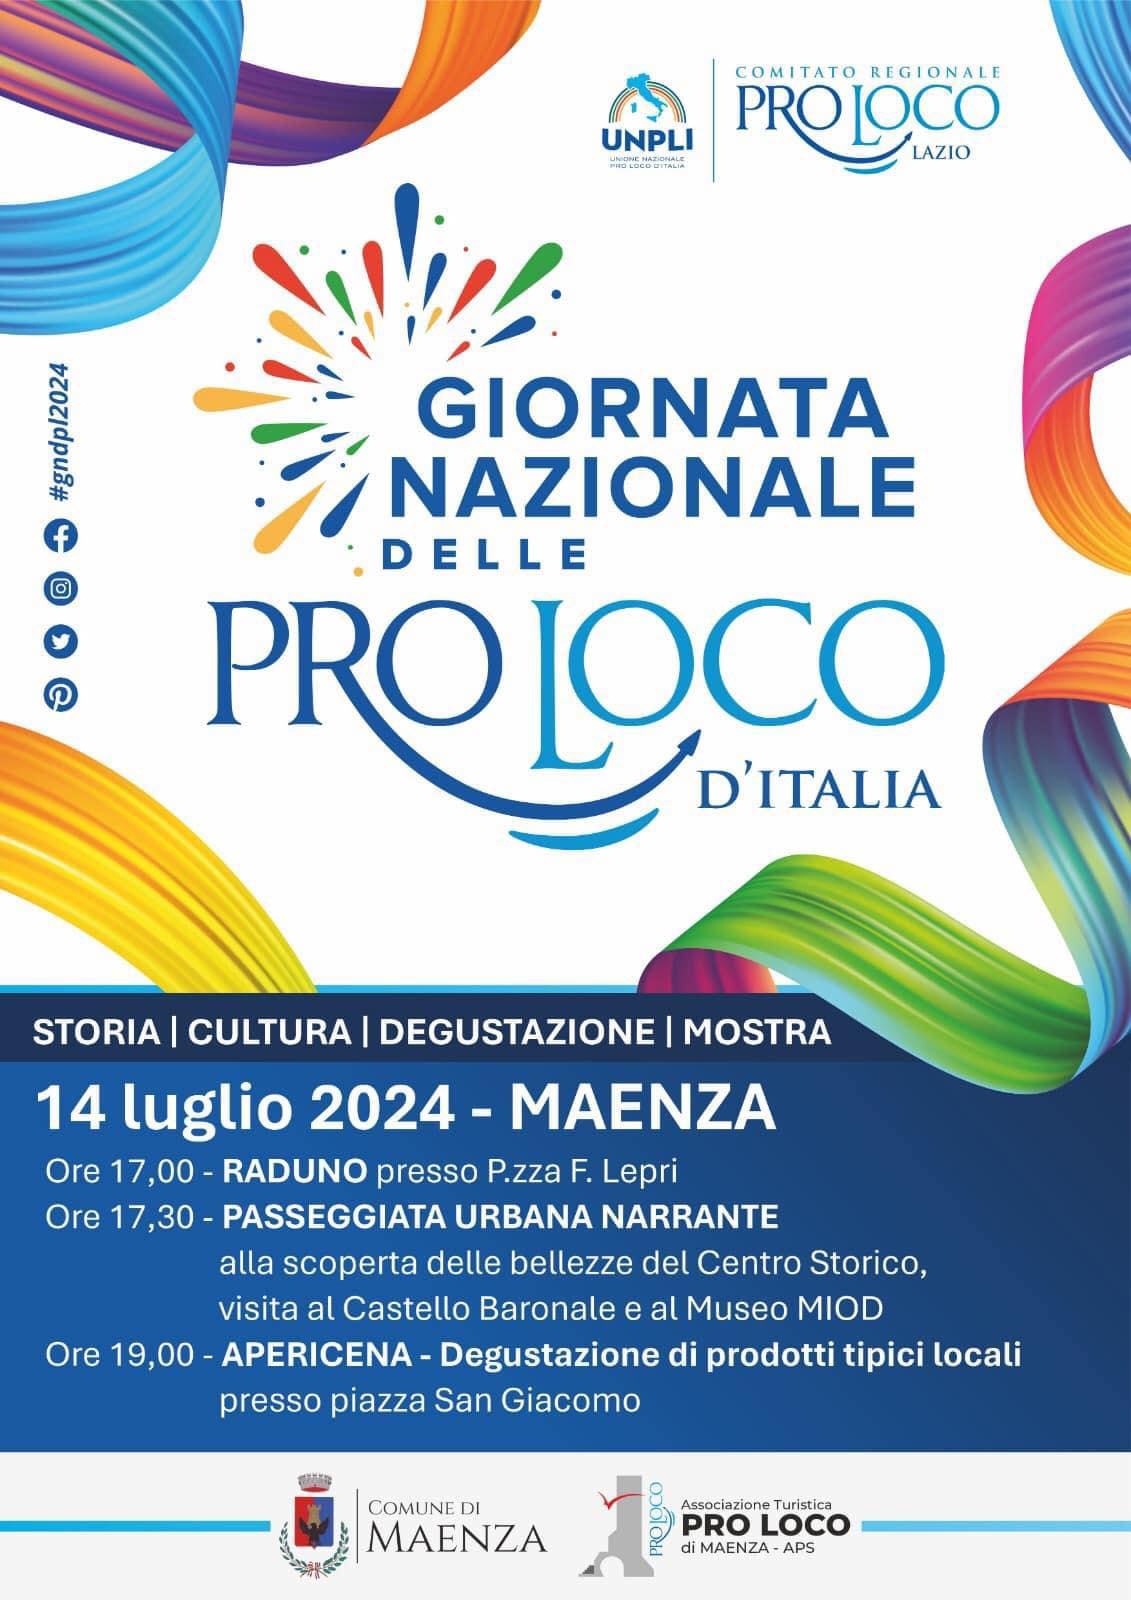 Maenza: Giornata Nazionale delle proloco d'Italia @ Maenza